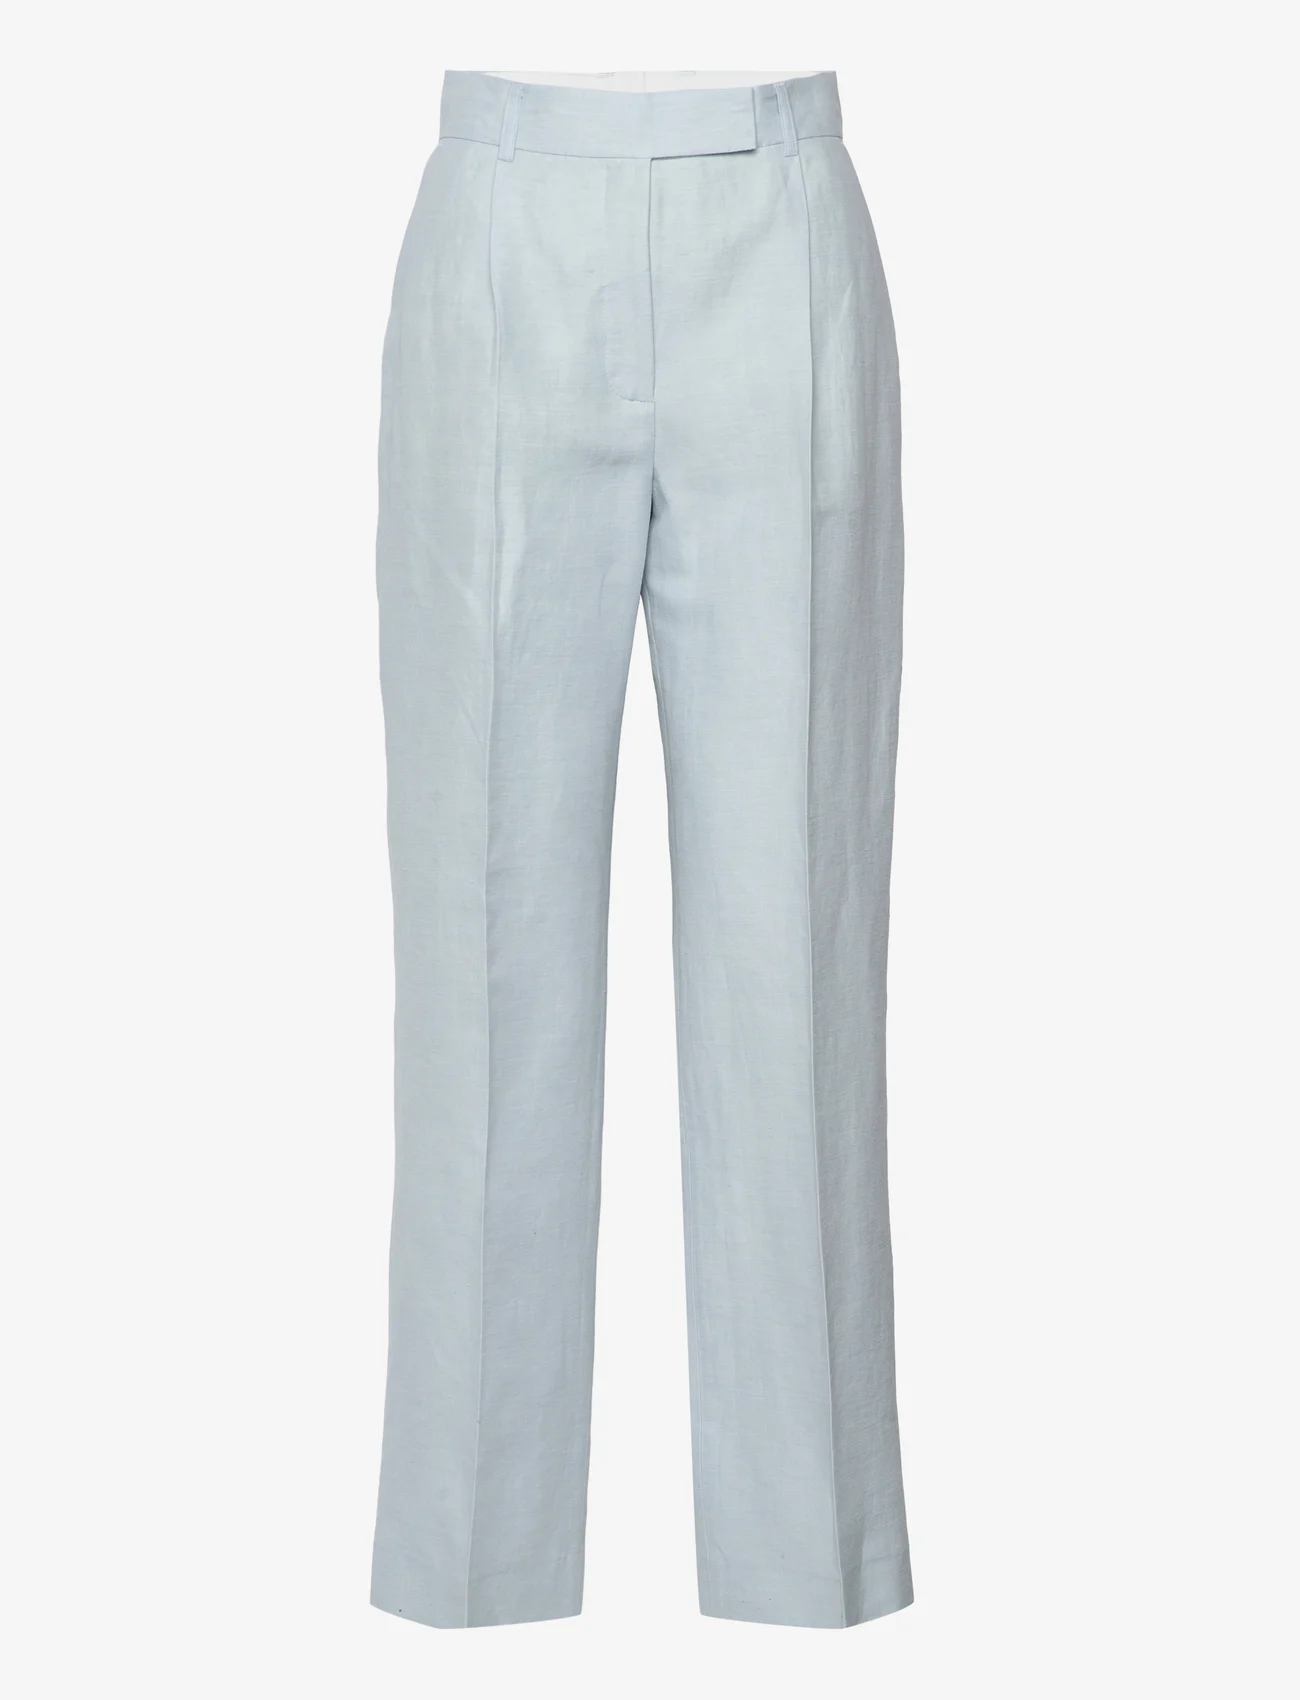 Day Birger et Mikkelsen - Charles - Solid Linen - linen trousers - light blue - 0